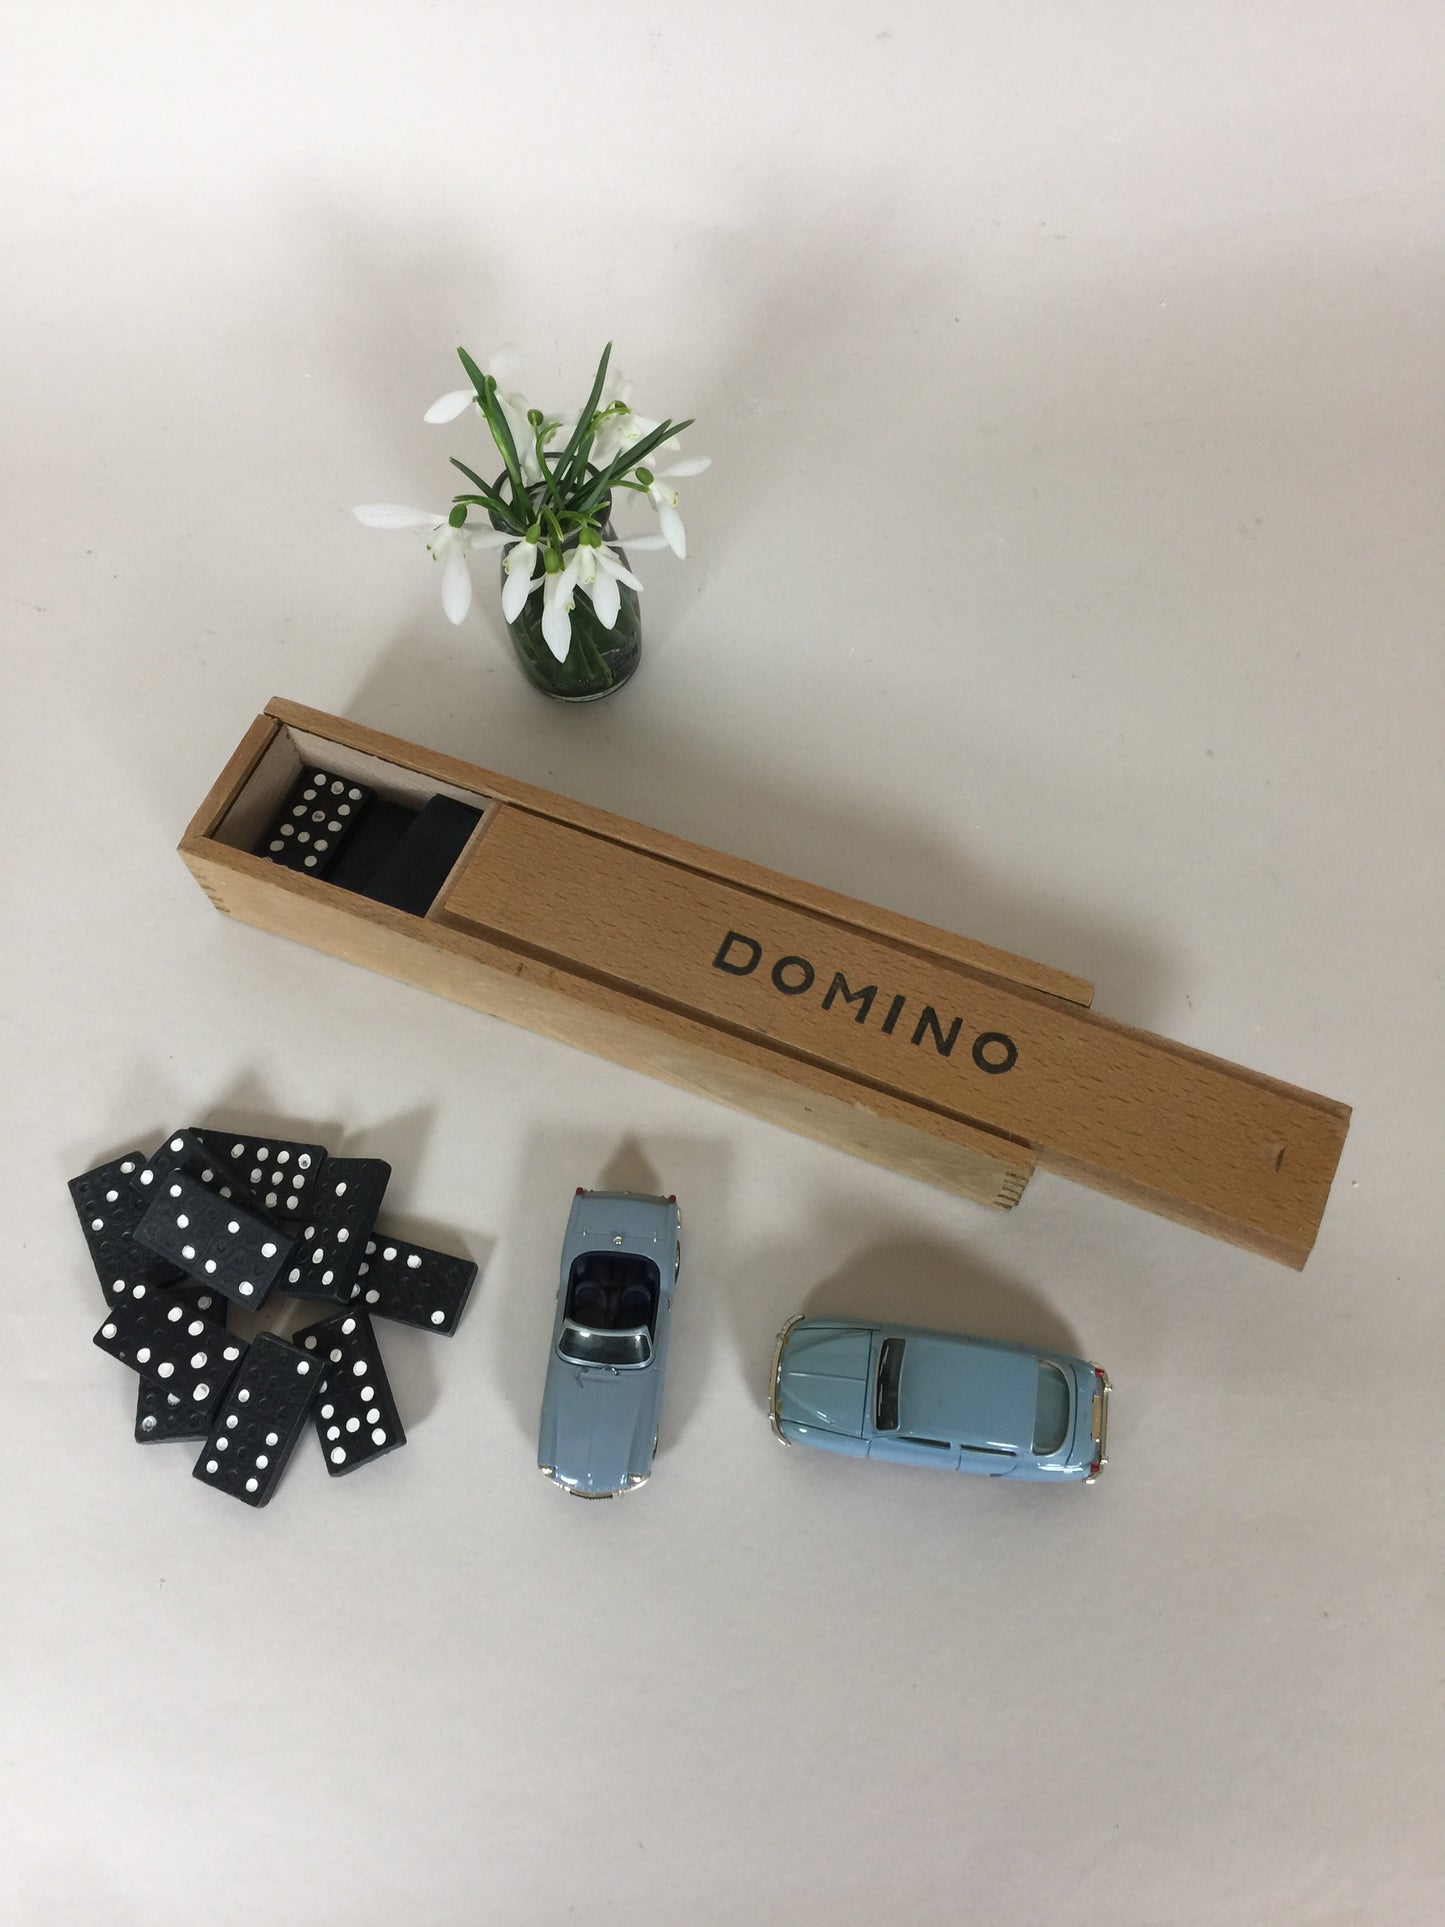 Domino spil i trækasse